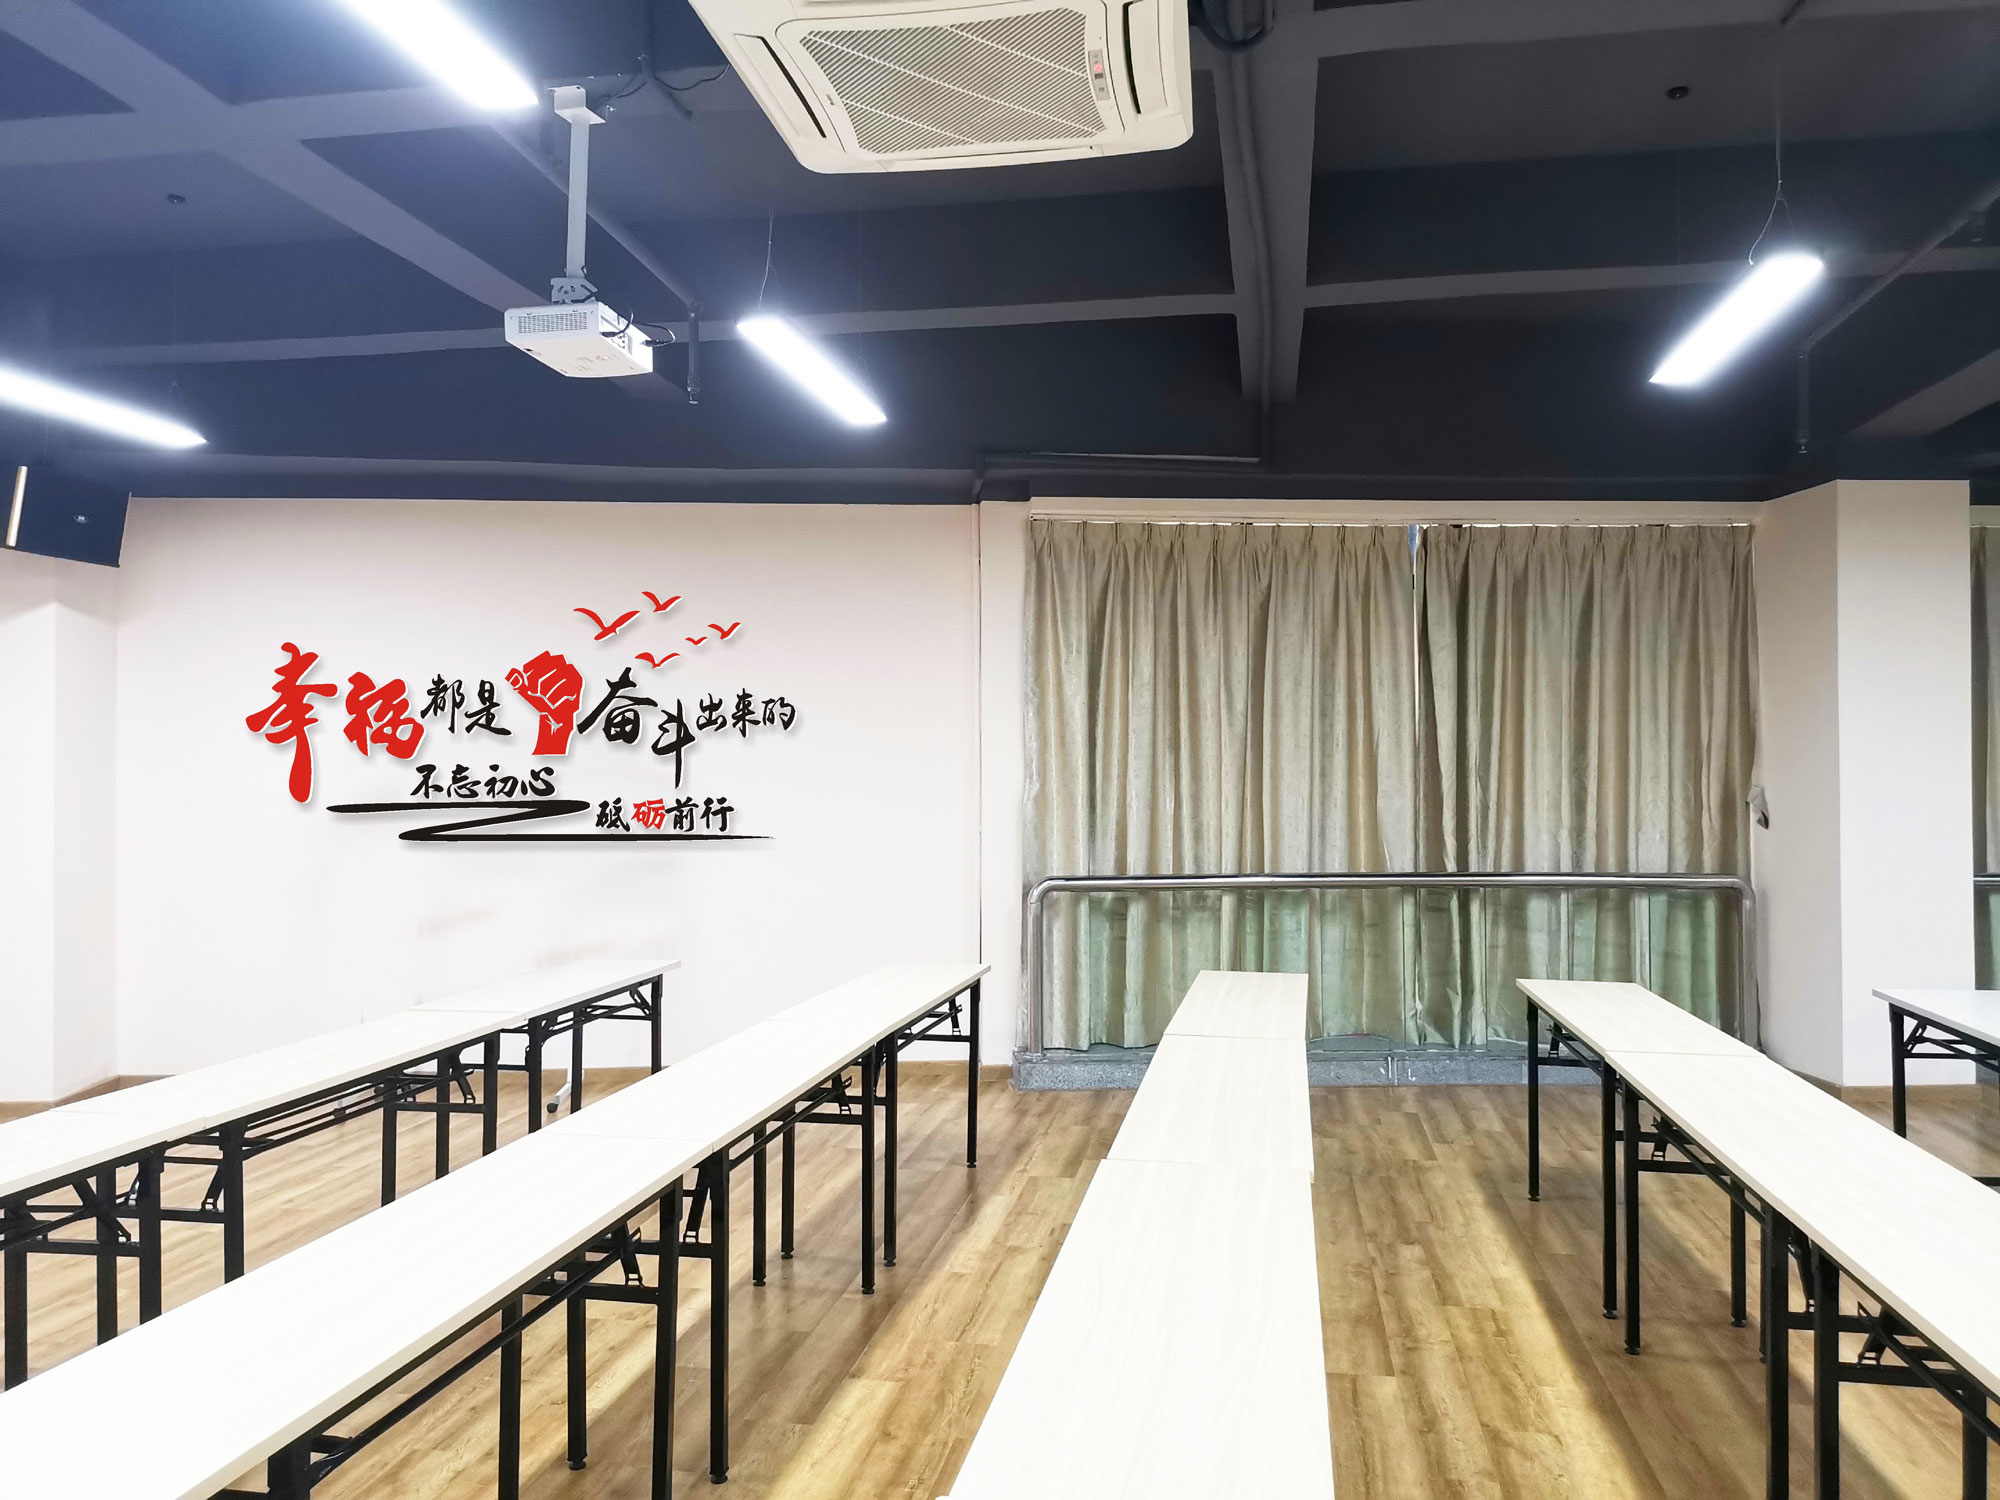 会议室激励文化墙2 会议室文化墙 东莞市启成广告有限公司